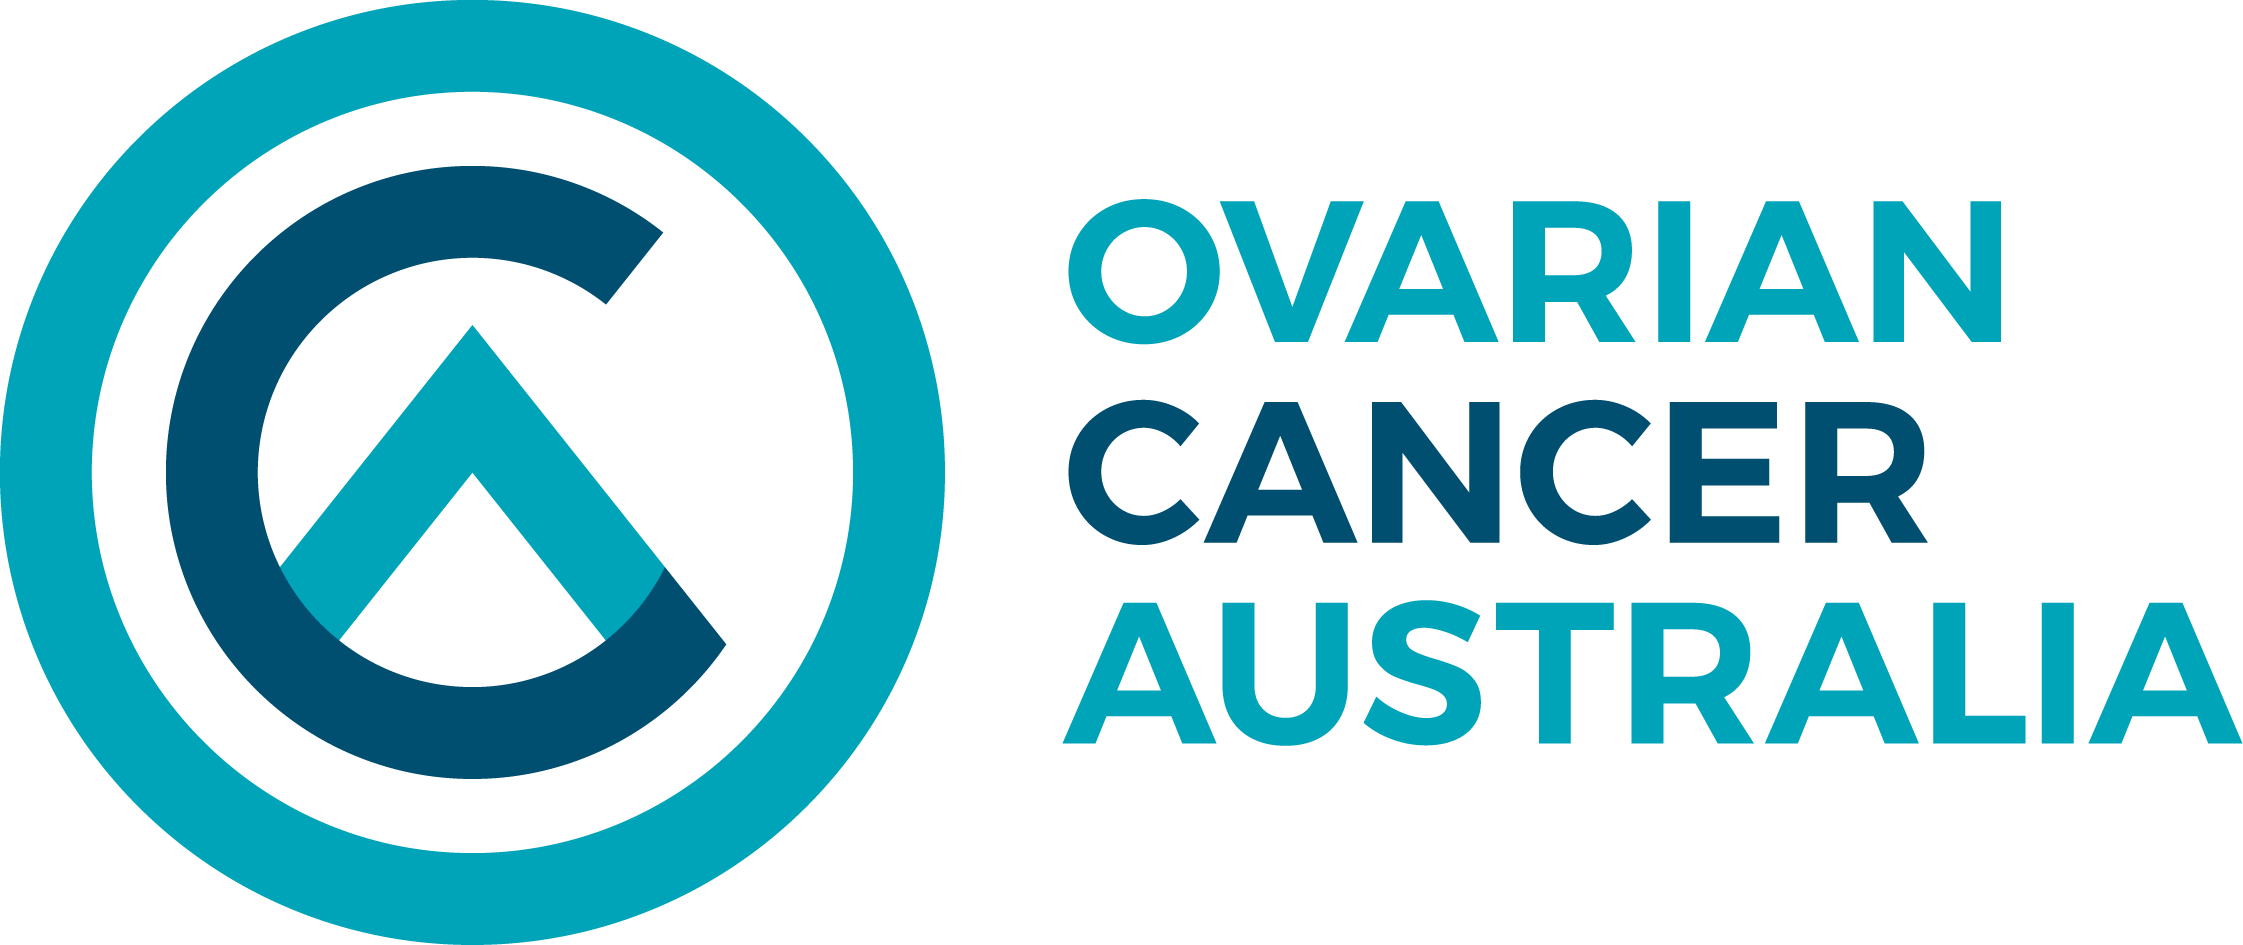 Ovarian Cancer Australia